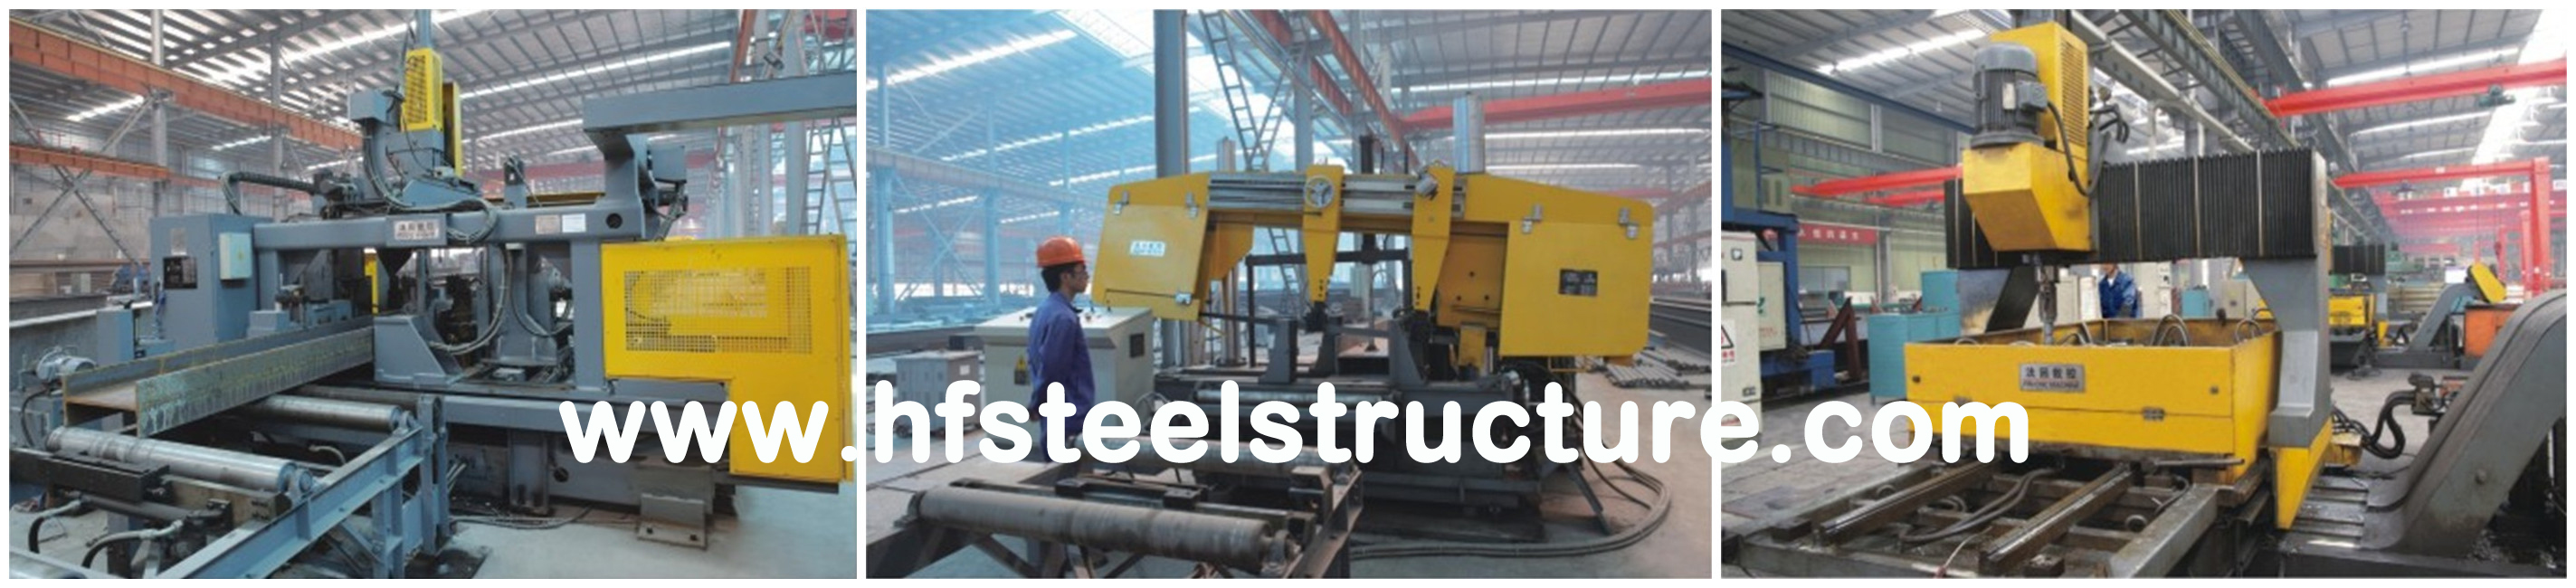 Pre Engineering Industrial Steel Buildings Fabrication Used As Workshop Warehouse